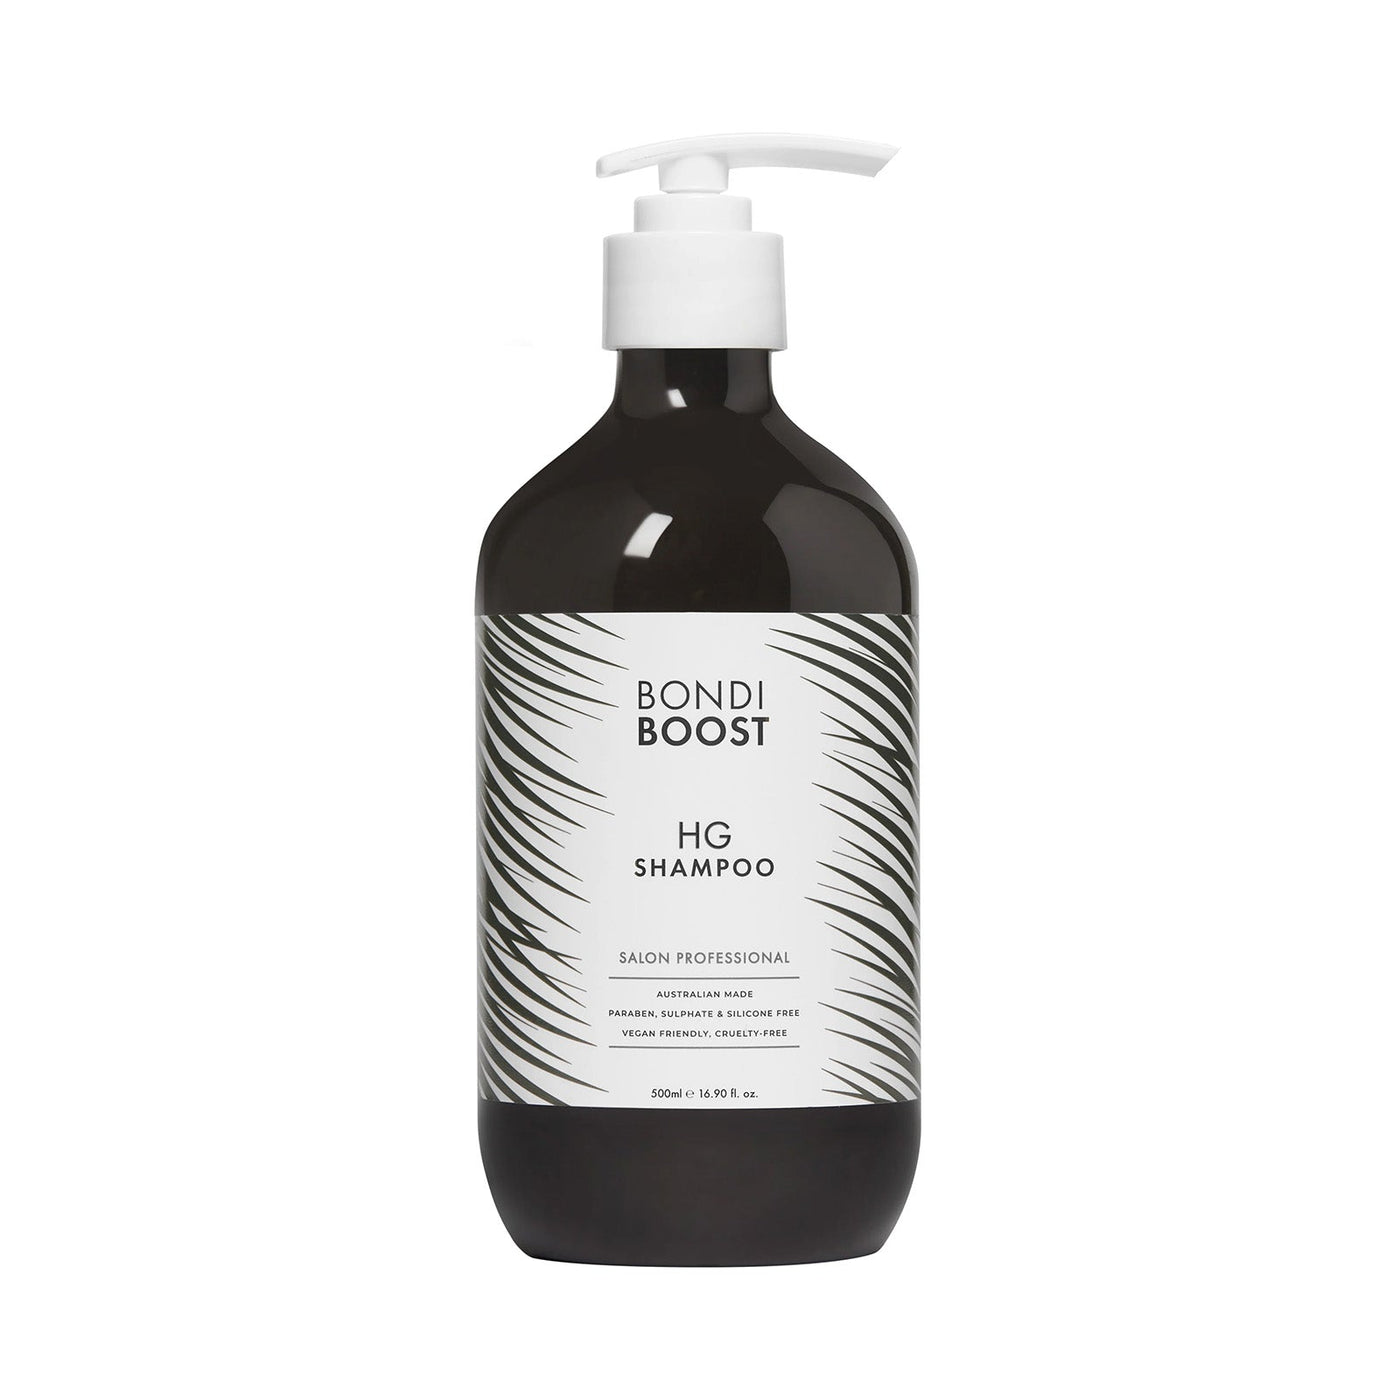 BondiBoost Hair Growth Shampoo (500ml)